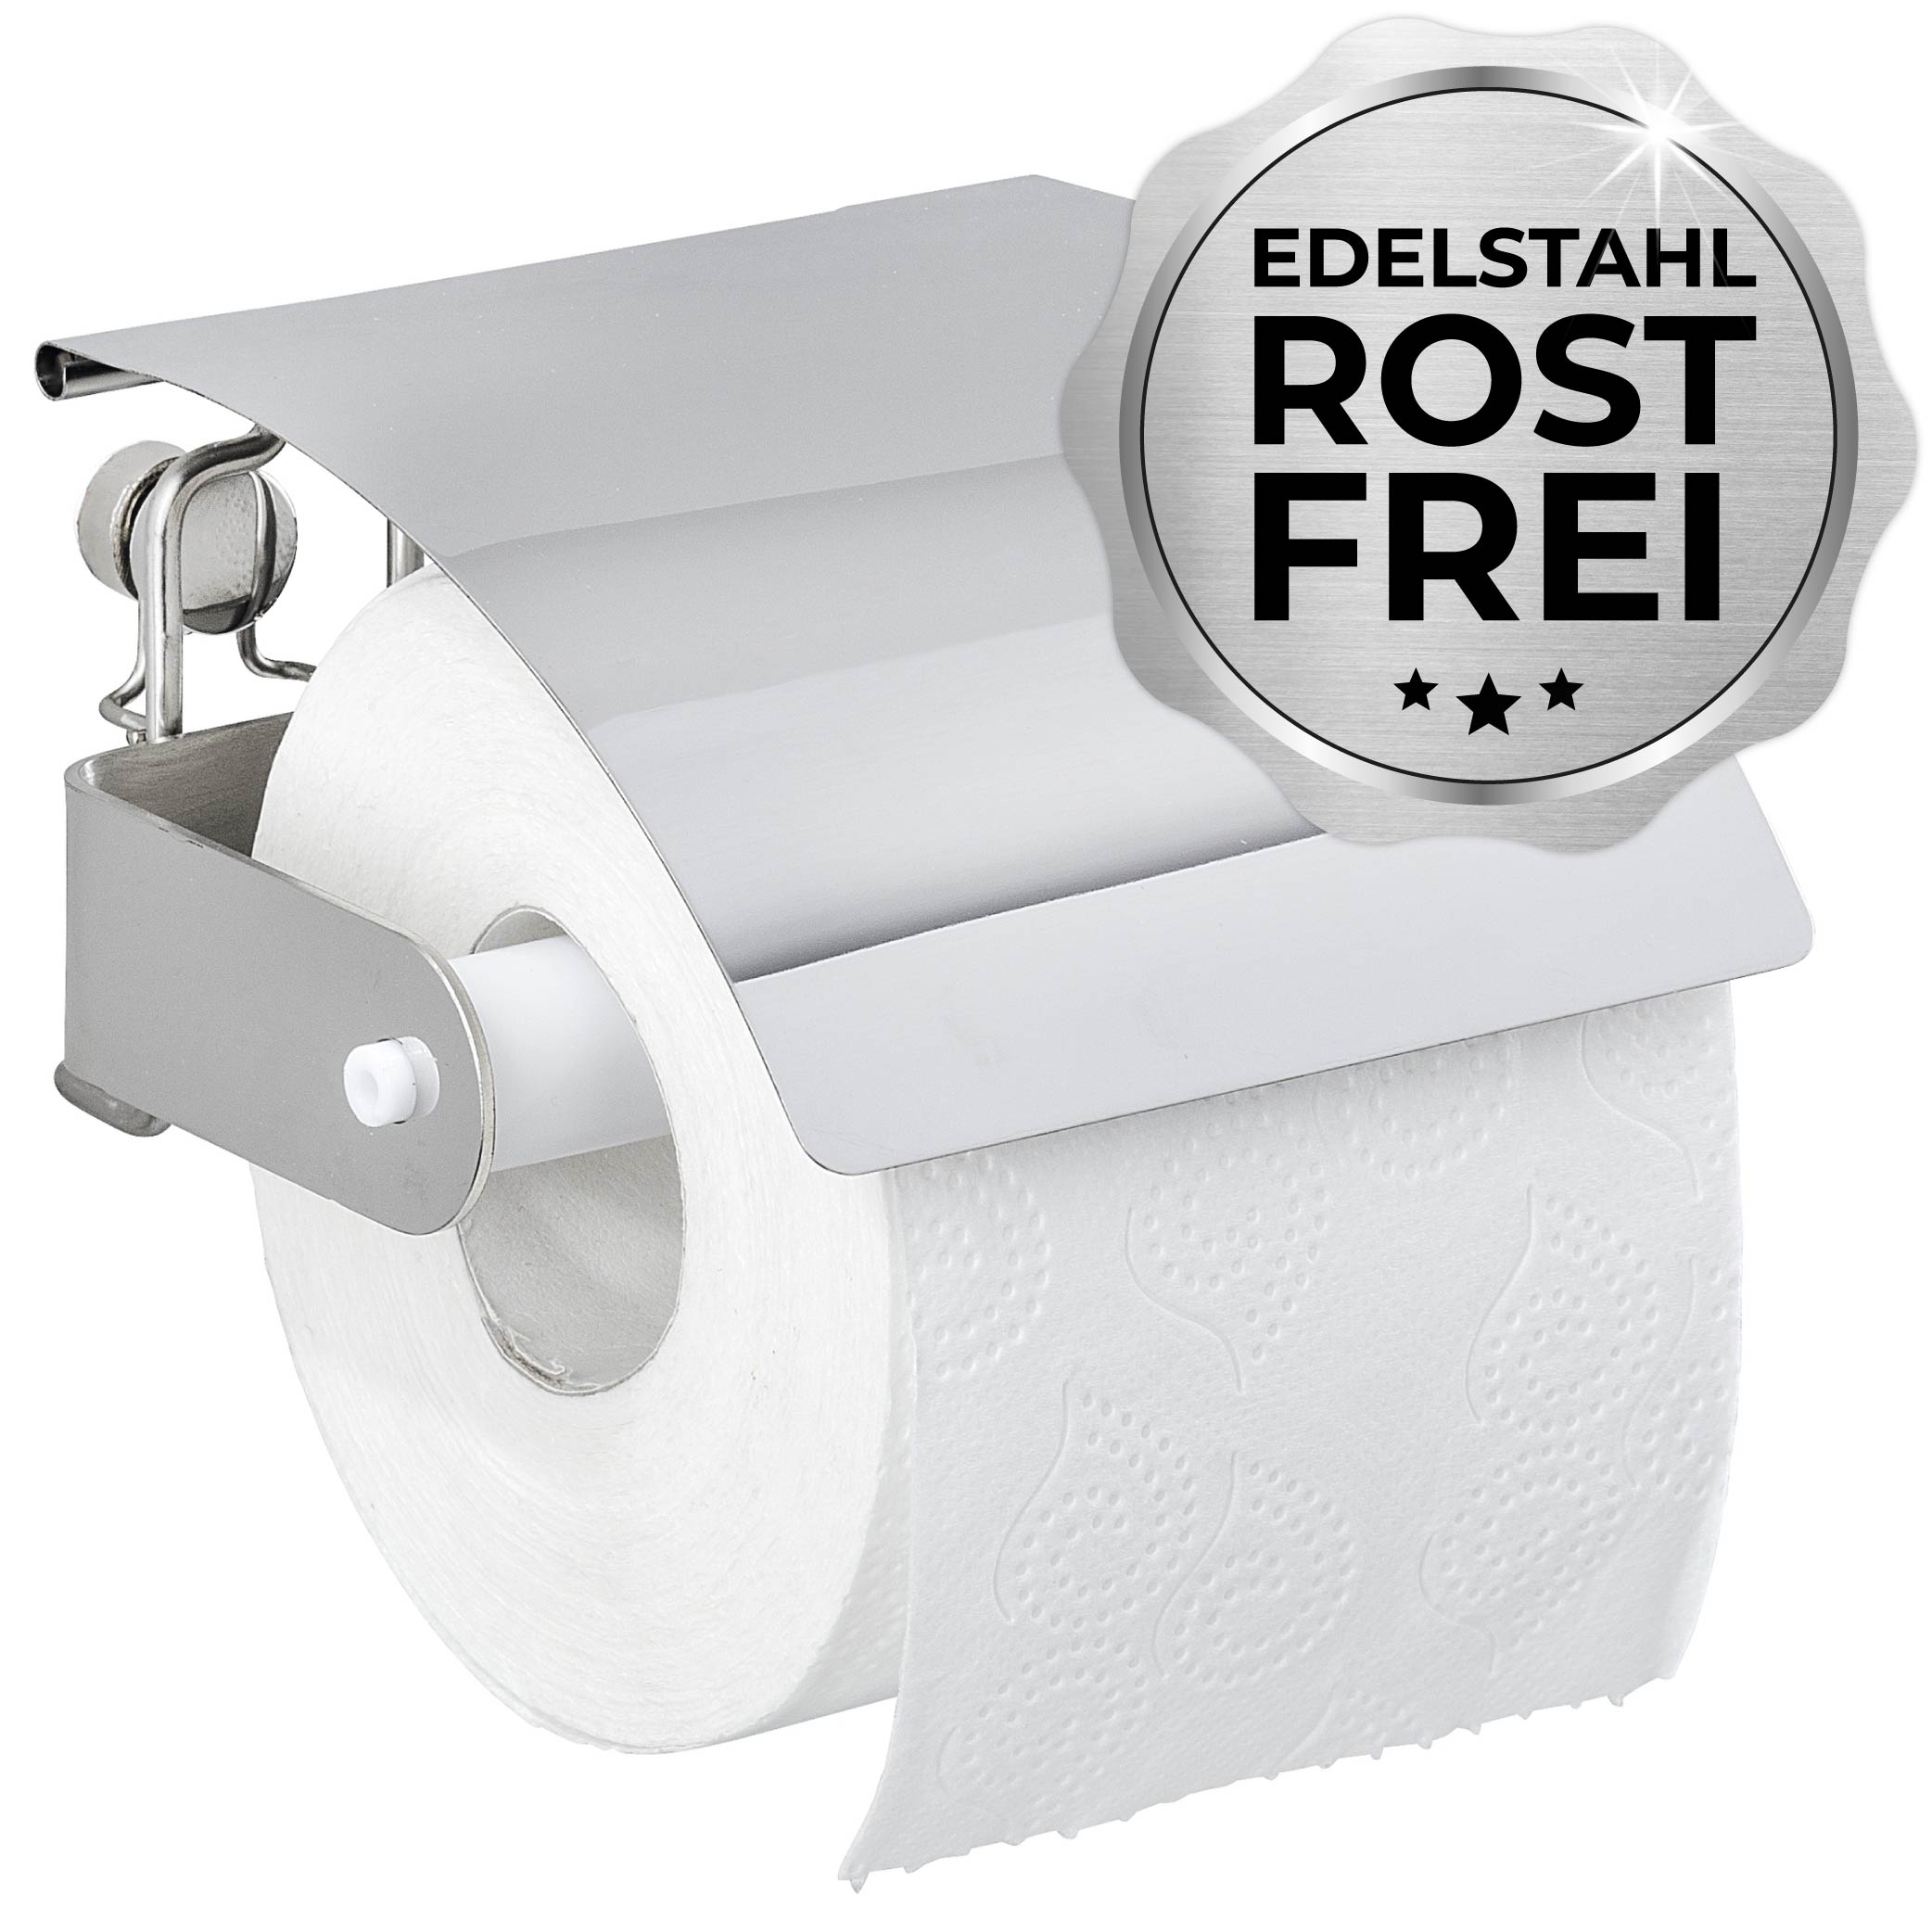 Moderner Toilettenpapierhalter - Die Ergänzung Deal für Bad! jedes Rocket 